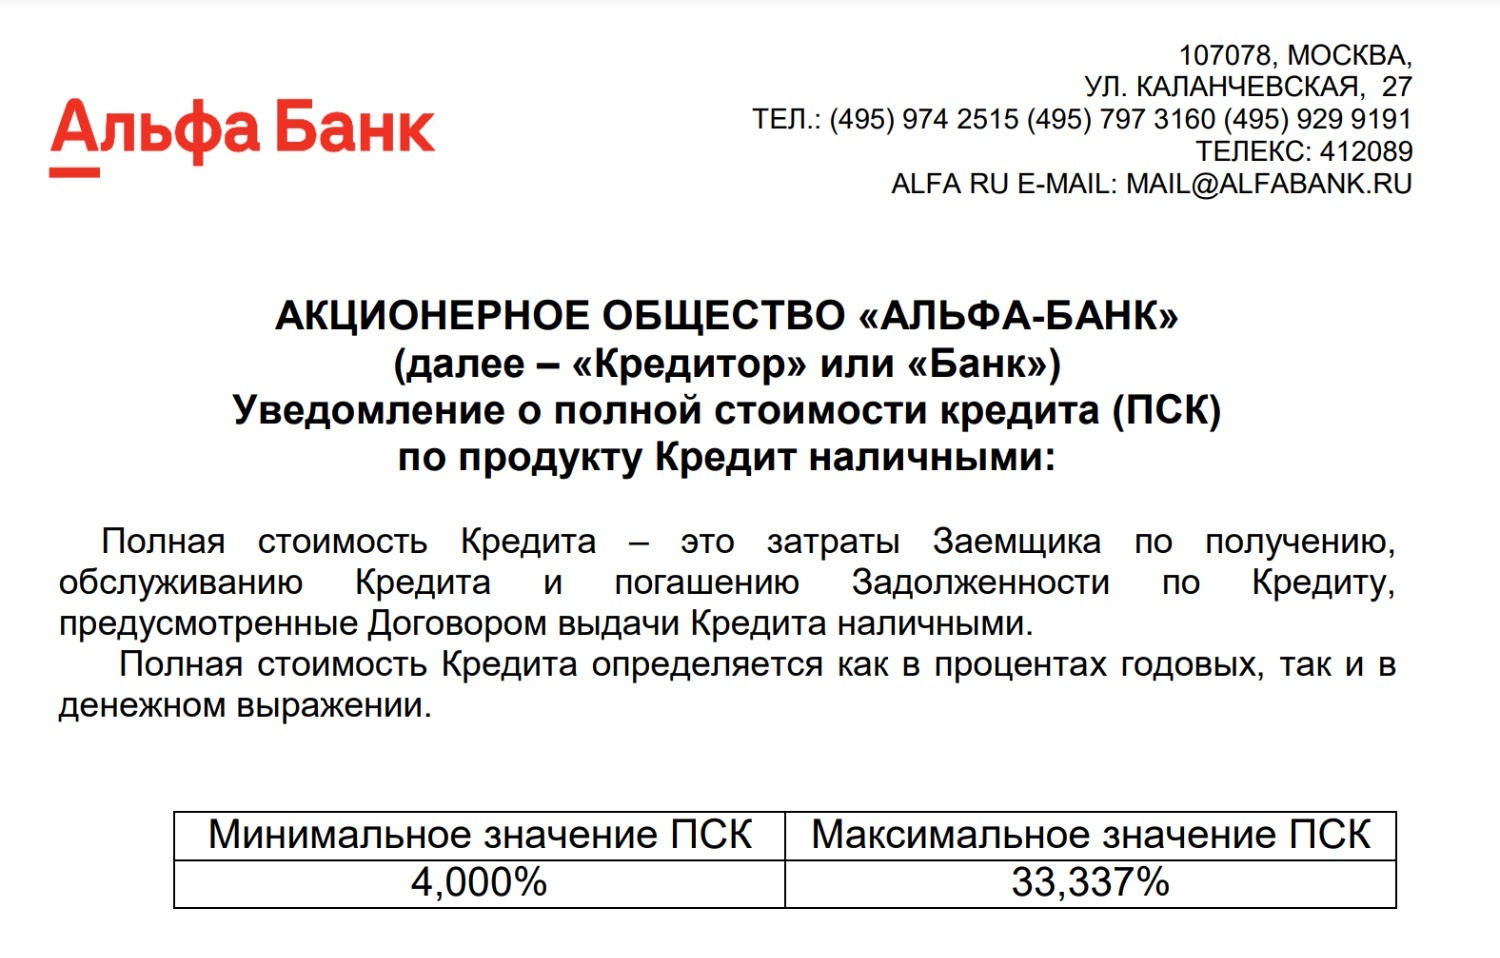 Полная стоимость потребкредита в "Альфа-Банке" достигает 33,337% 